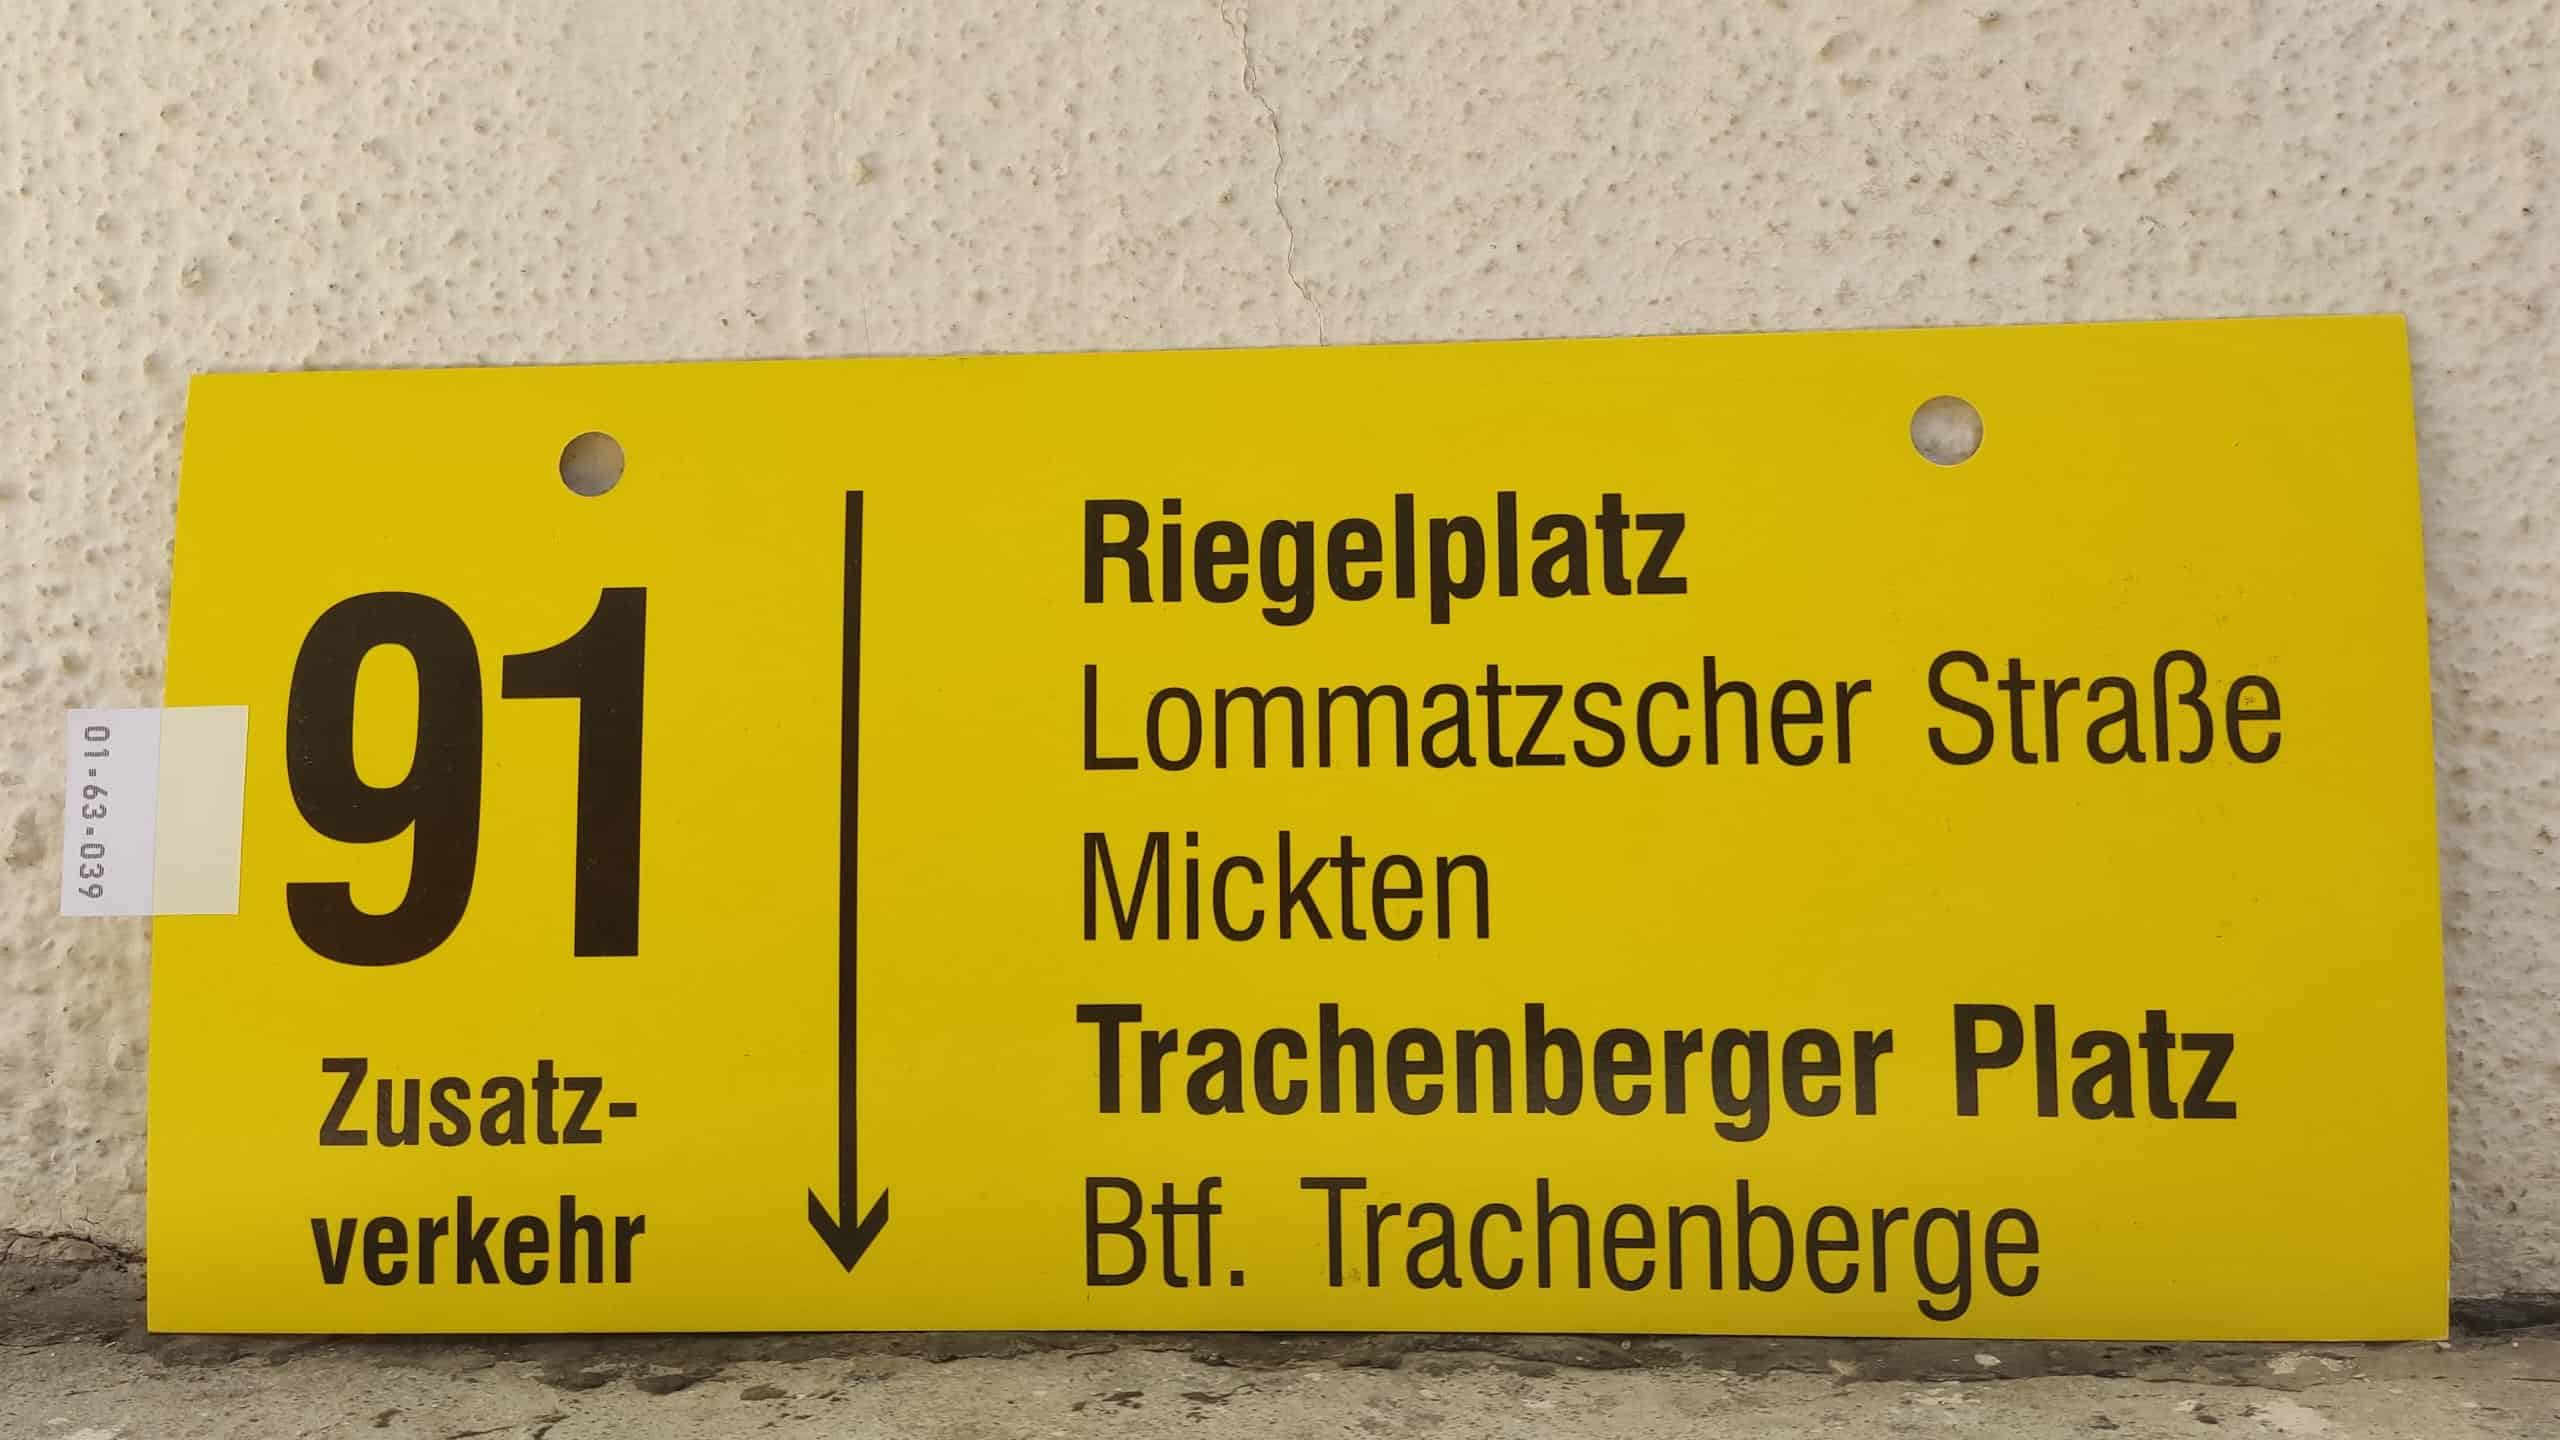 91 Zusatz- verkehr Riegelplatz – Trachenberger Platz – Btf. Trachenberge